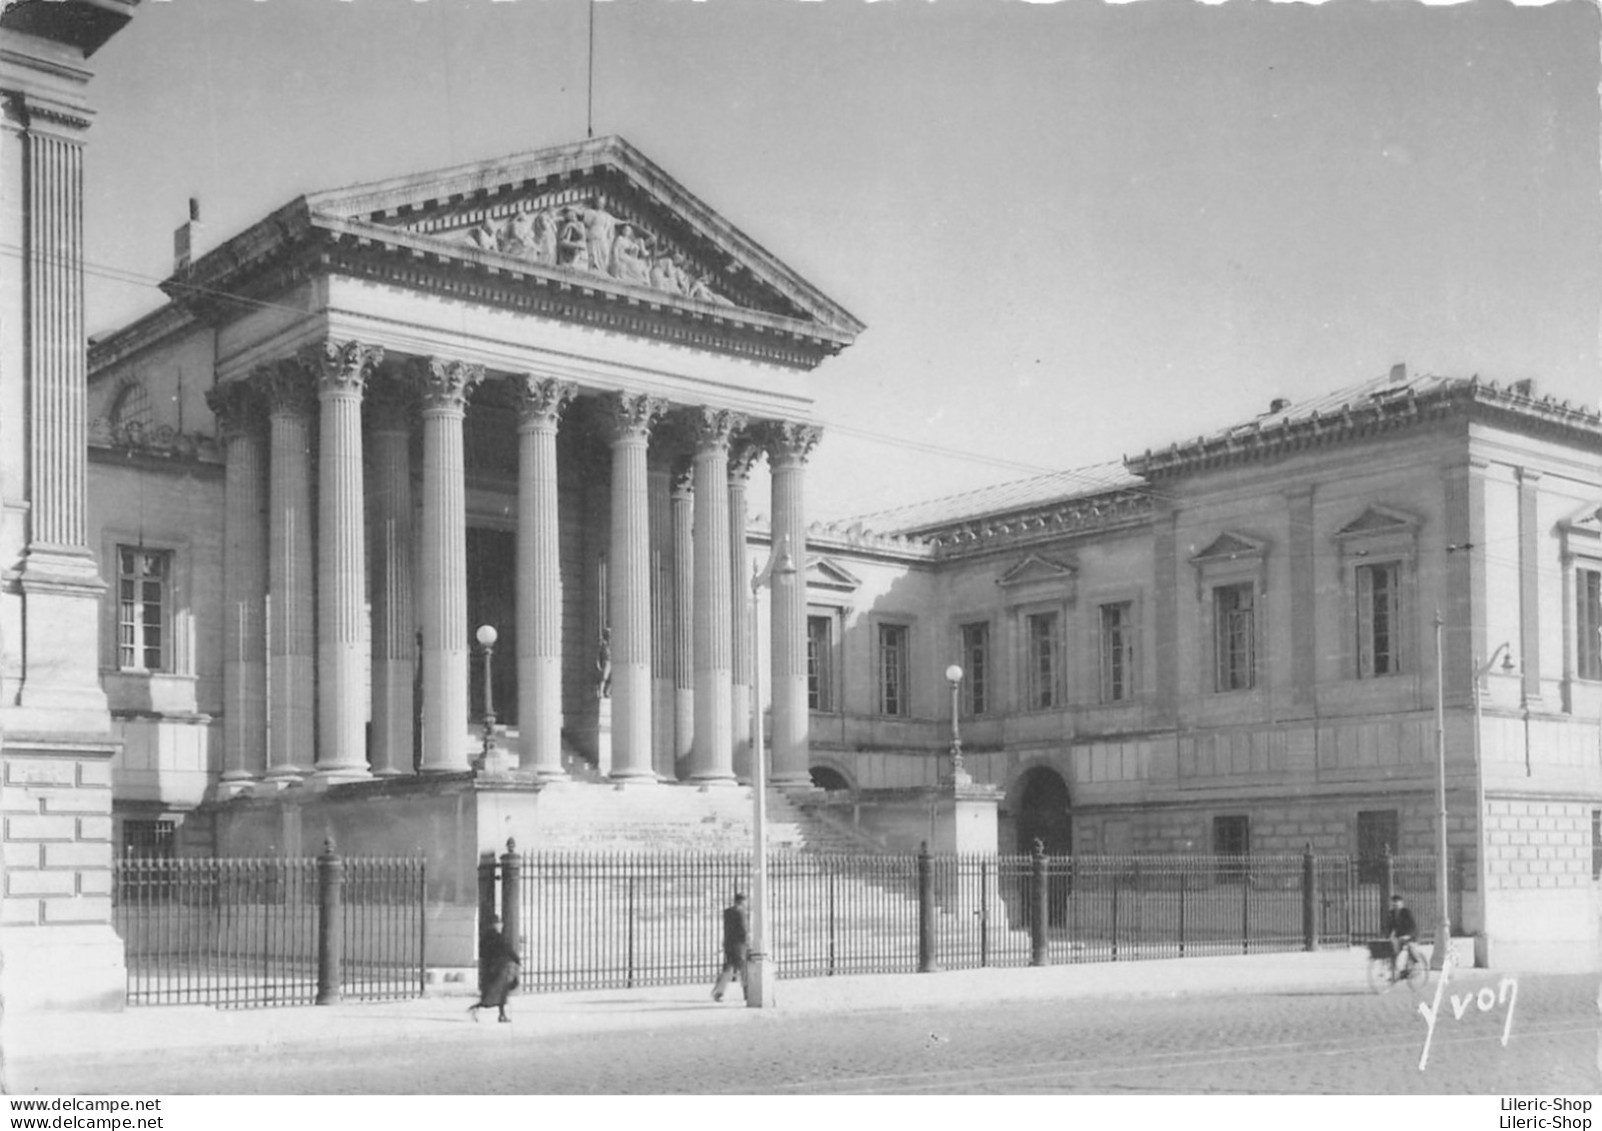 Montpellier (34) - Le Palais De Justice (1866) - Les éditions D'art Yvon - L.B 1179 CPSM GF - Montpellier